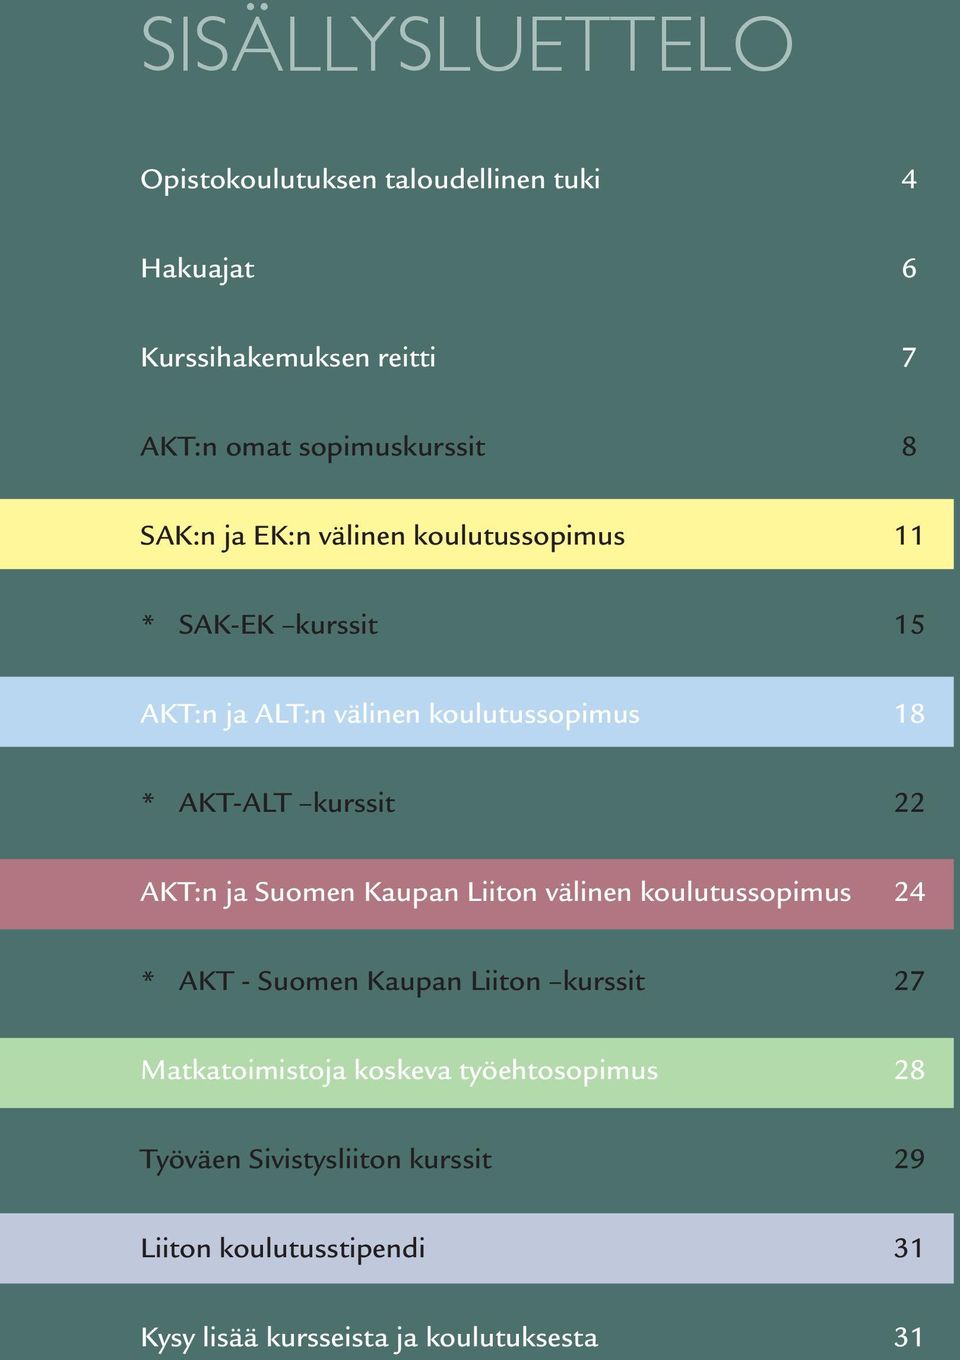 22 AKT:n ja Suomen Kaupan Liiton välinen koulutussopimus 24 * AKT - Suomen Kaupan Liiton kurssit 27 Matkatoimistoja